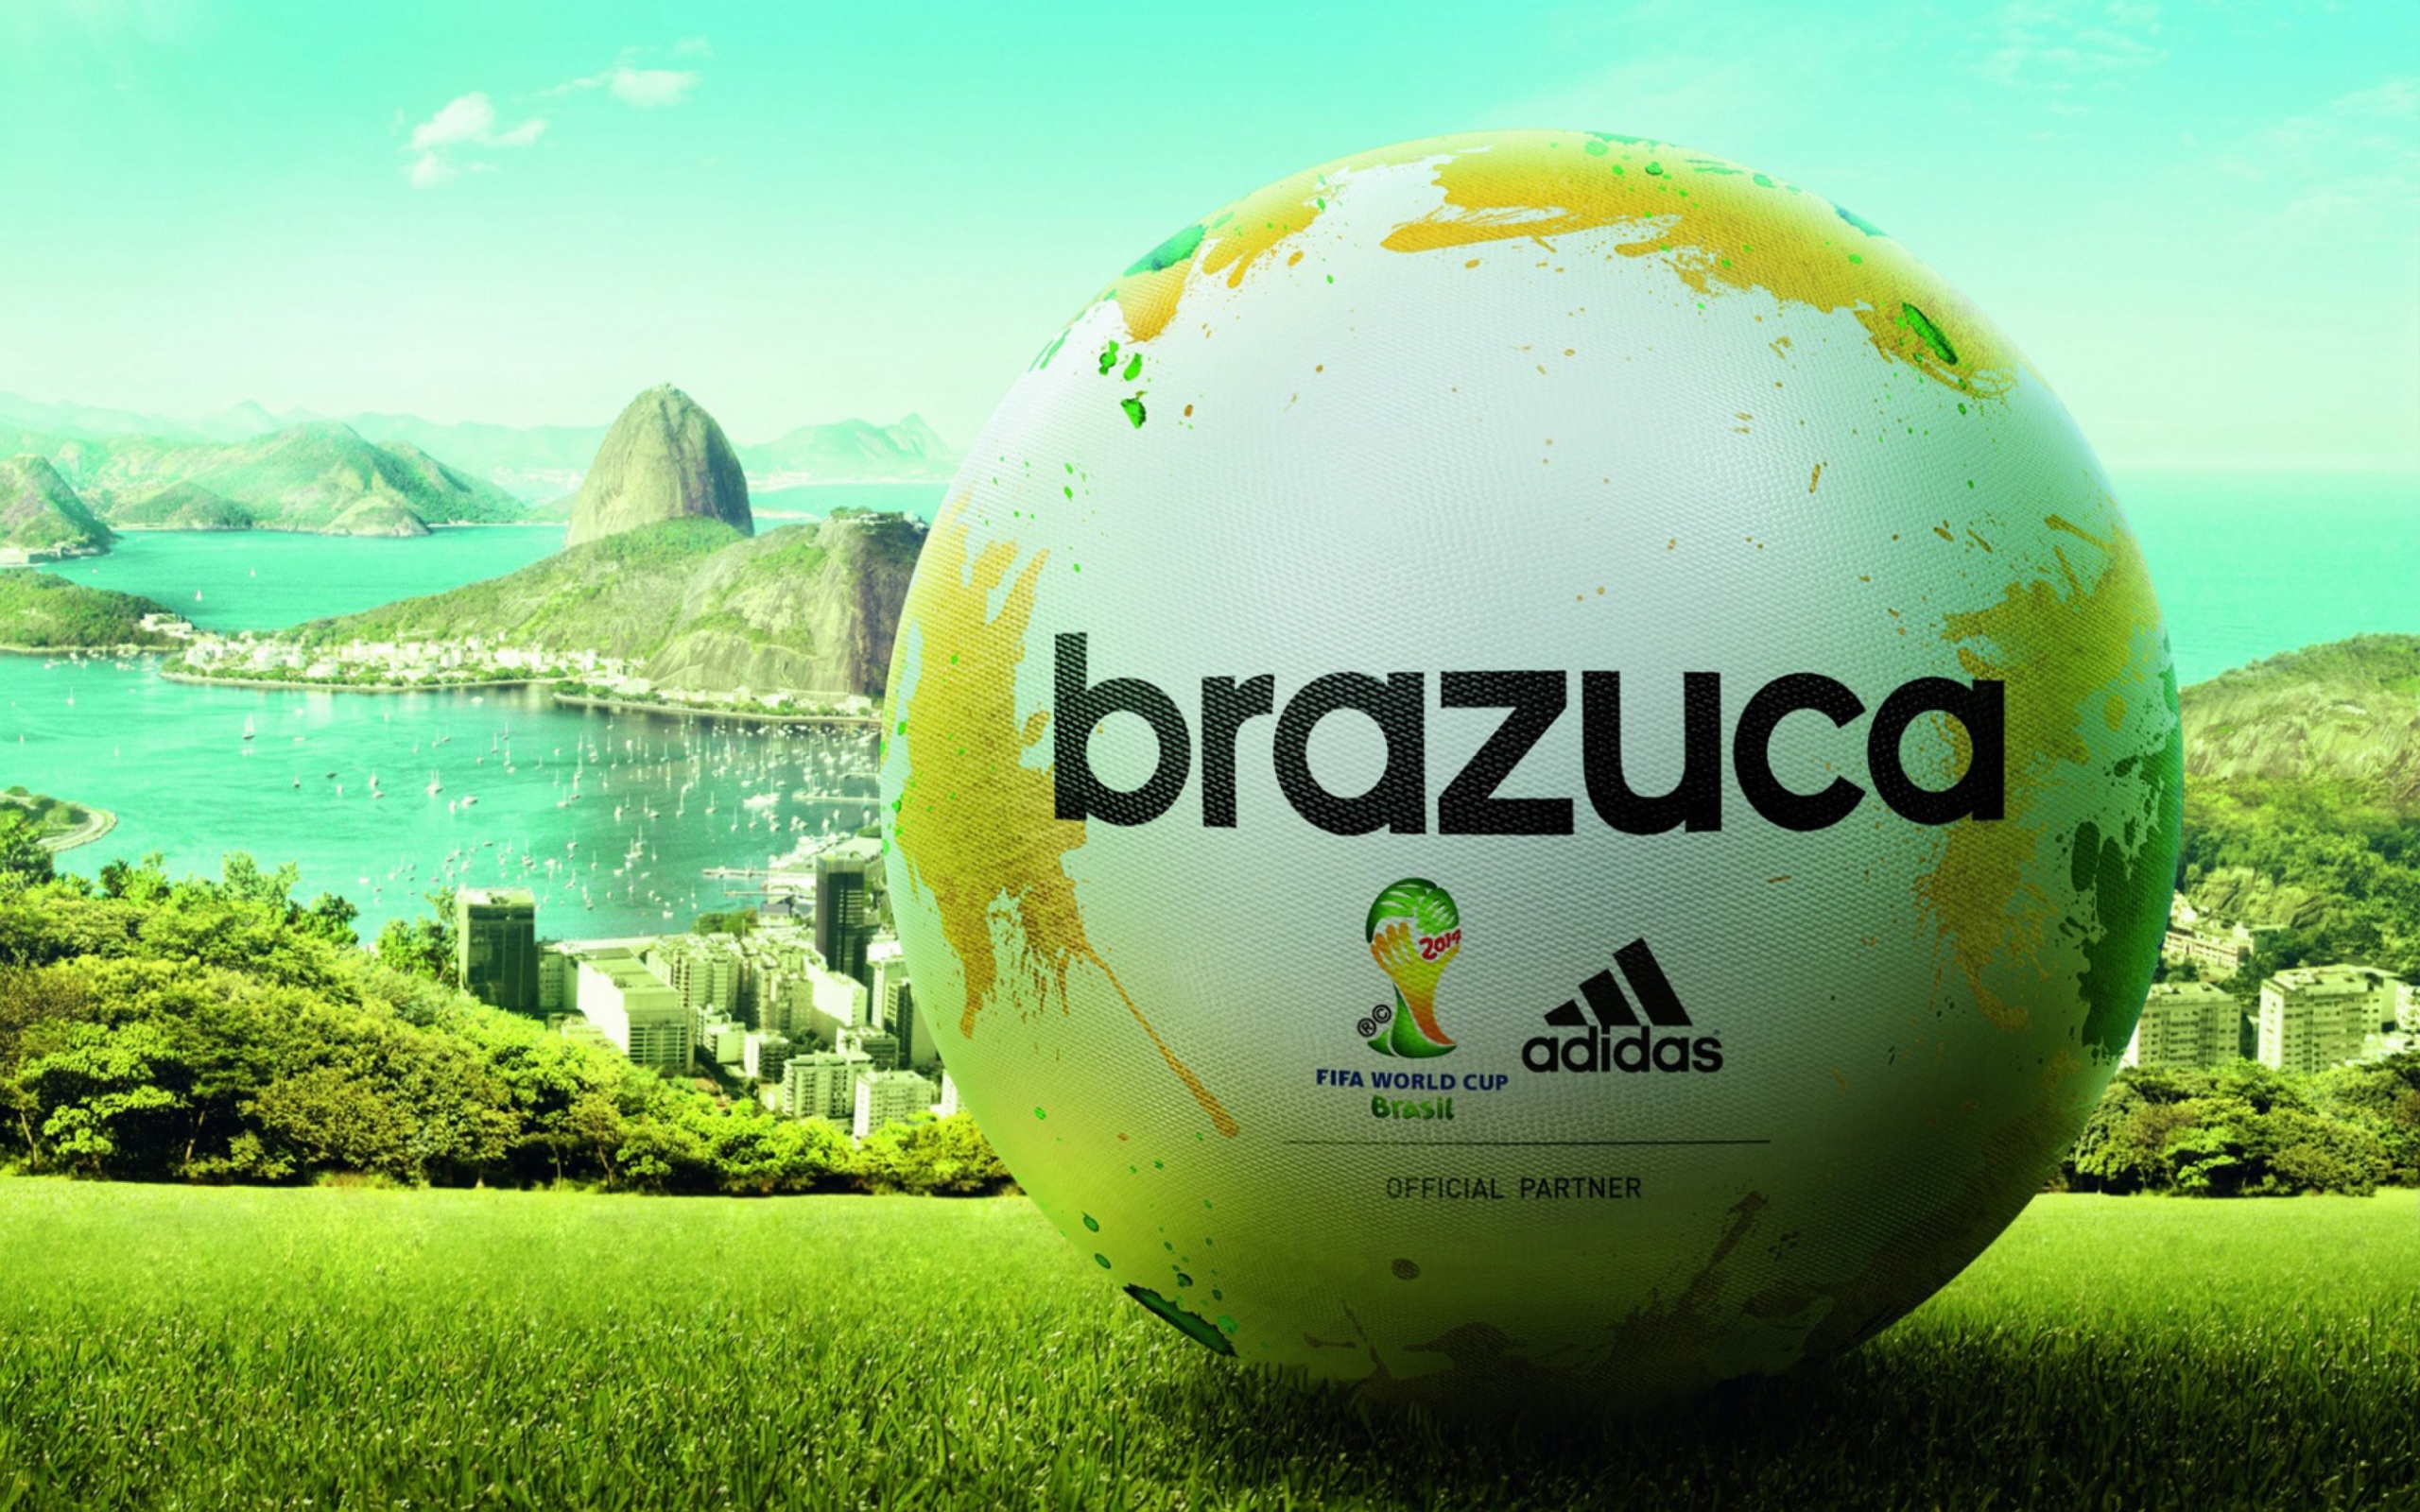 Das Adidas Brazuca Match Ball FIFA World Cup 2014 Wallpaper 2560x1600